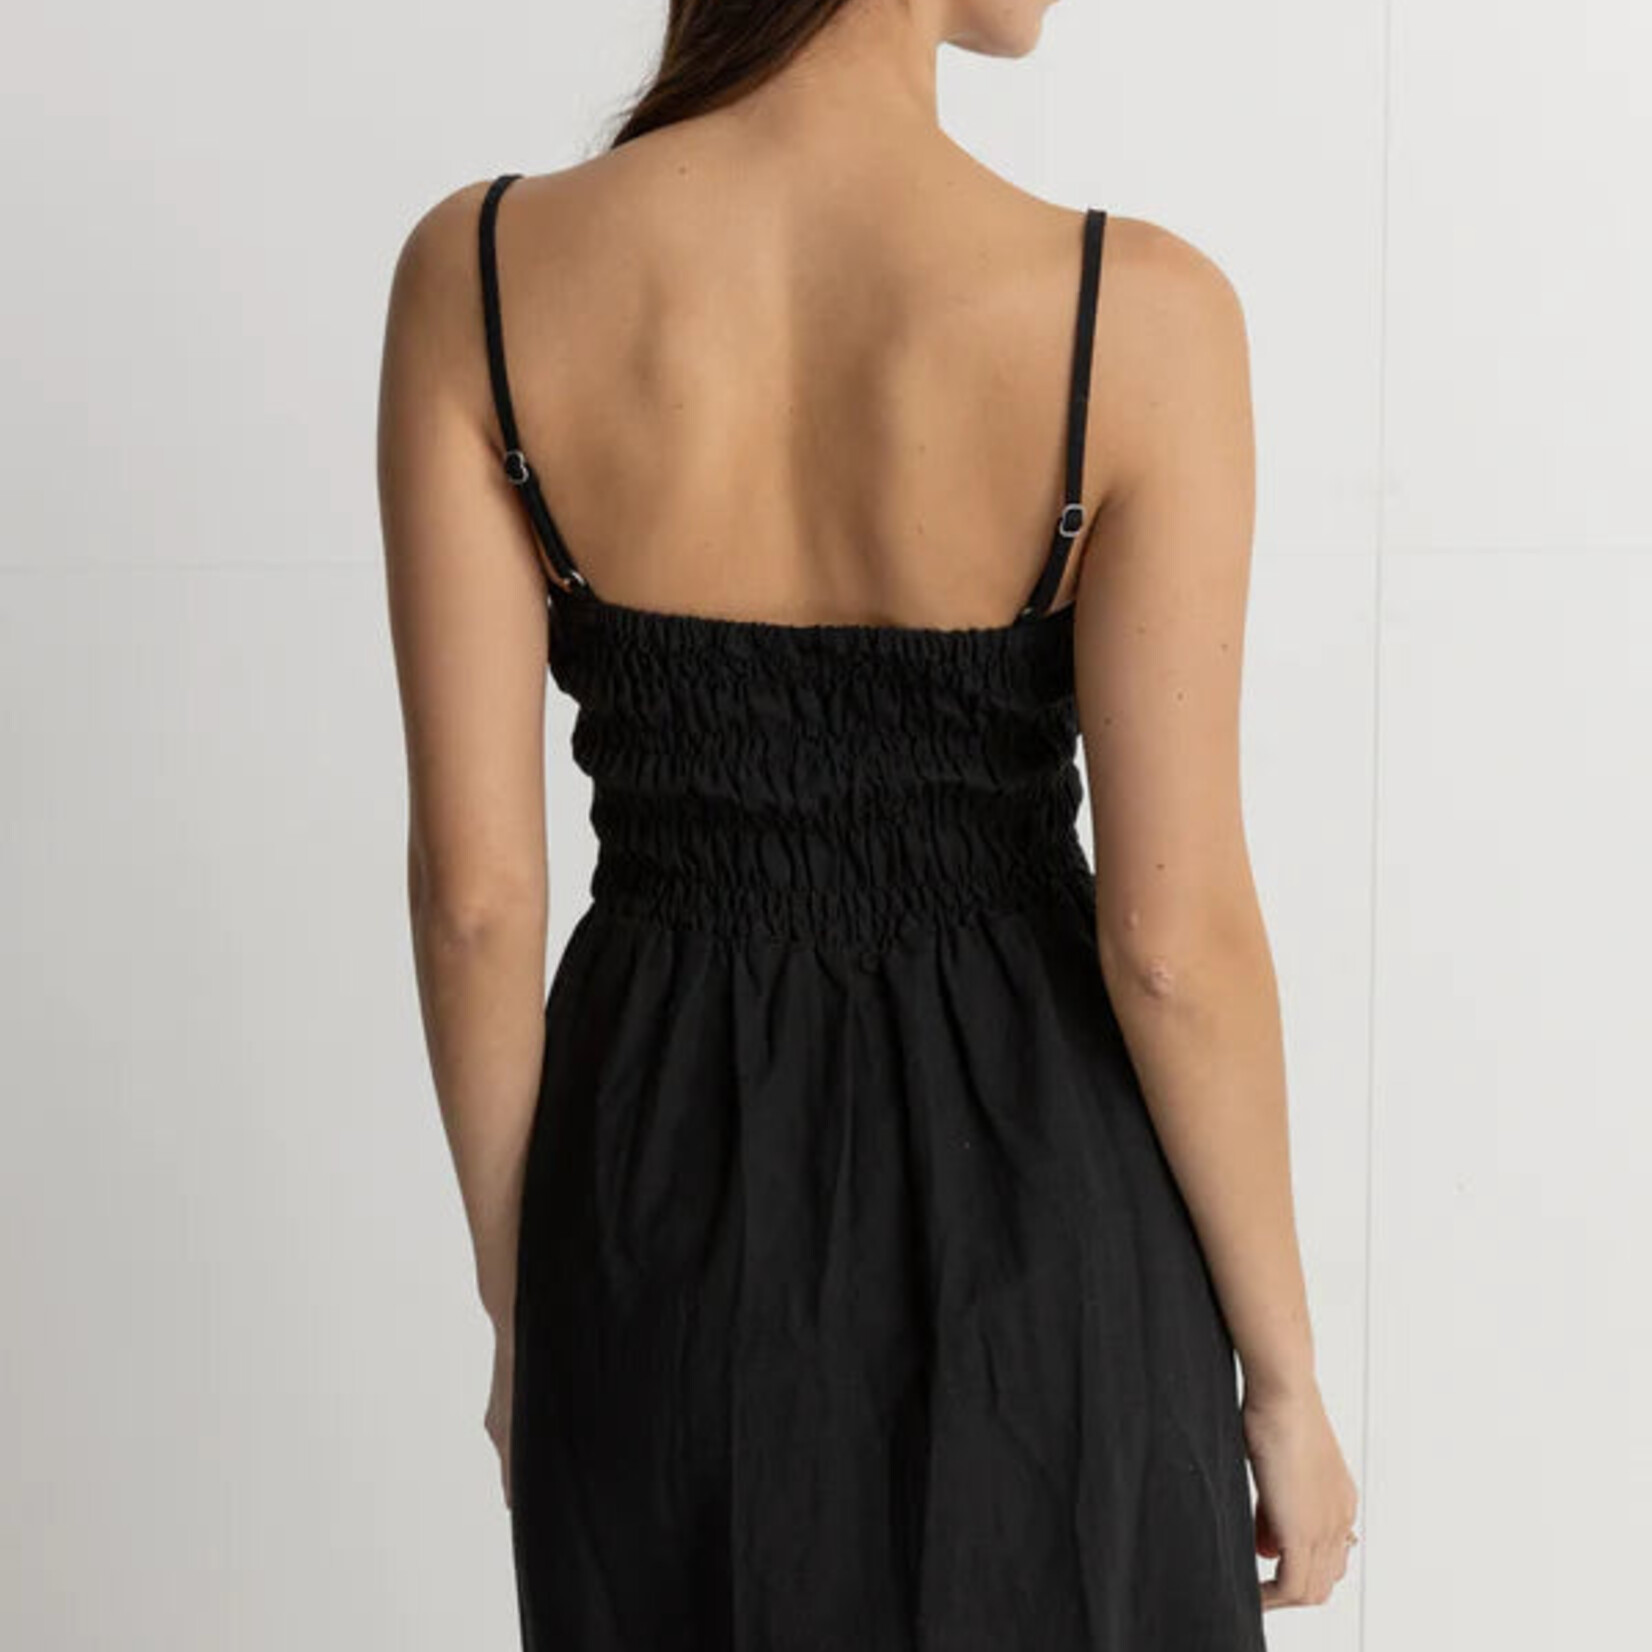 Rhythm Rhythm Classic Shirred Mini Dress - Black